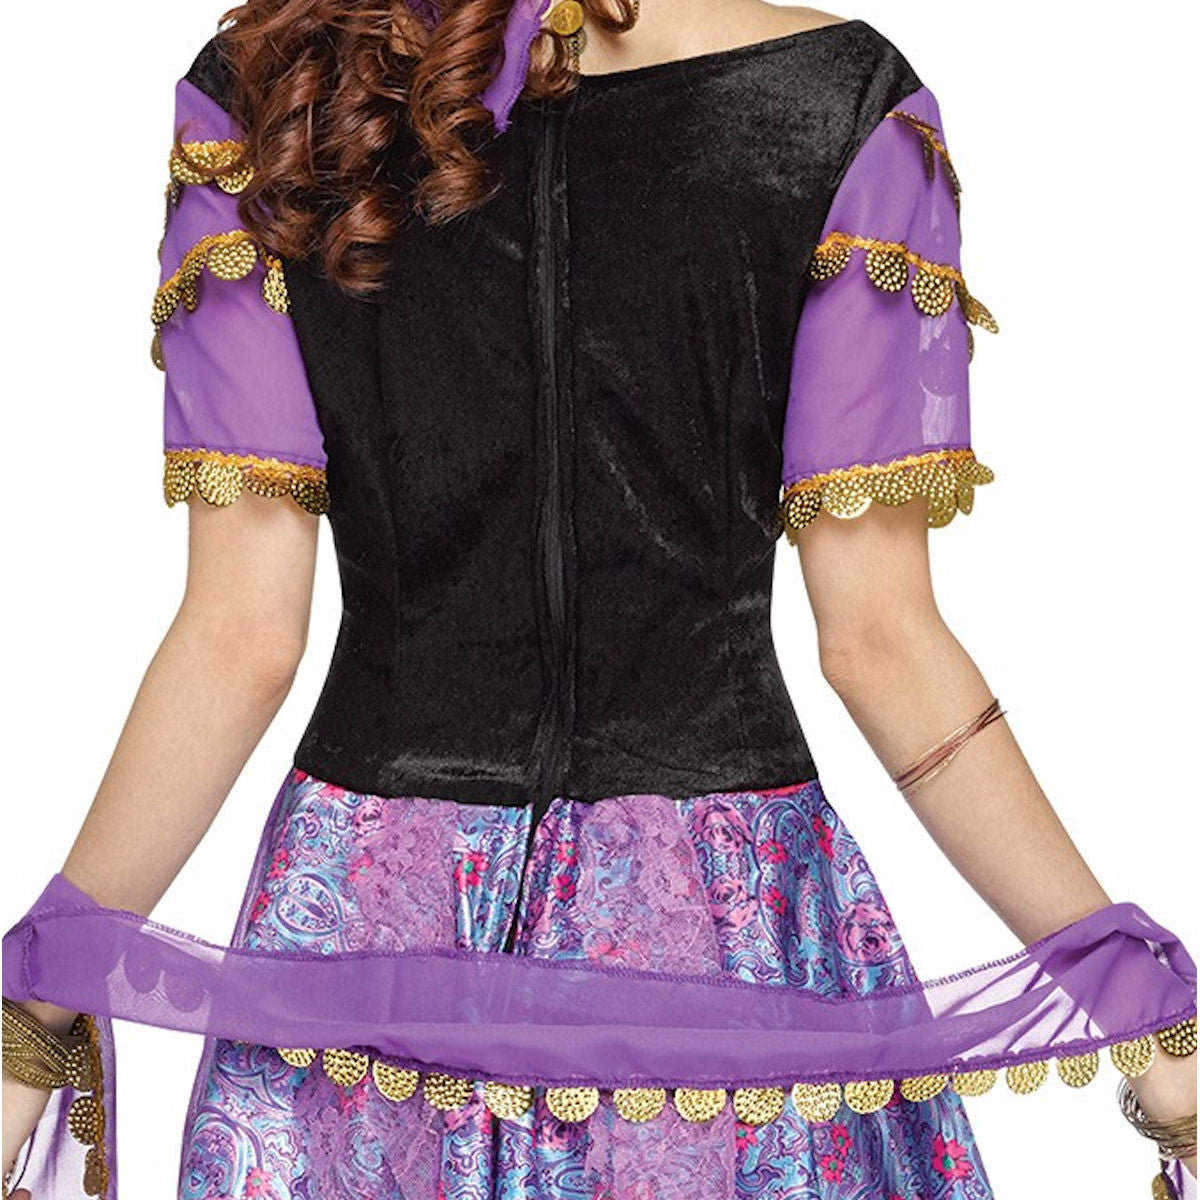 Gypsy Magic Fortune Teller Women's Fancy Dress Costume